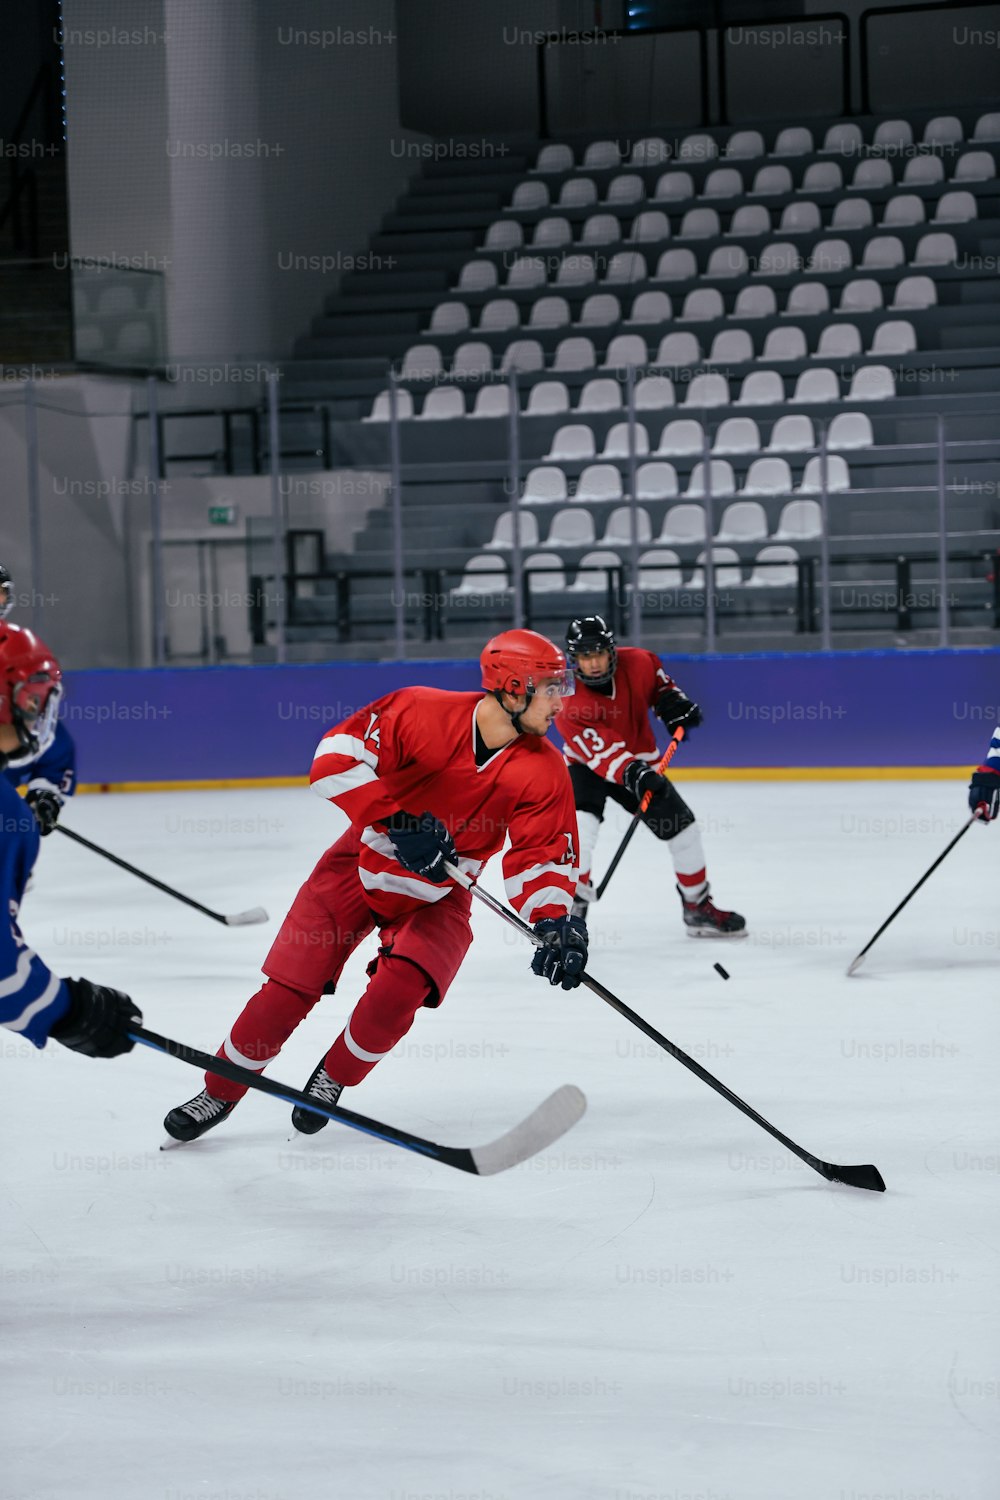 Un grupo de jóvenes jugando un partido de hockey sobre hielo